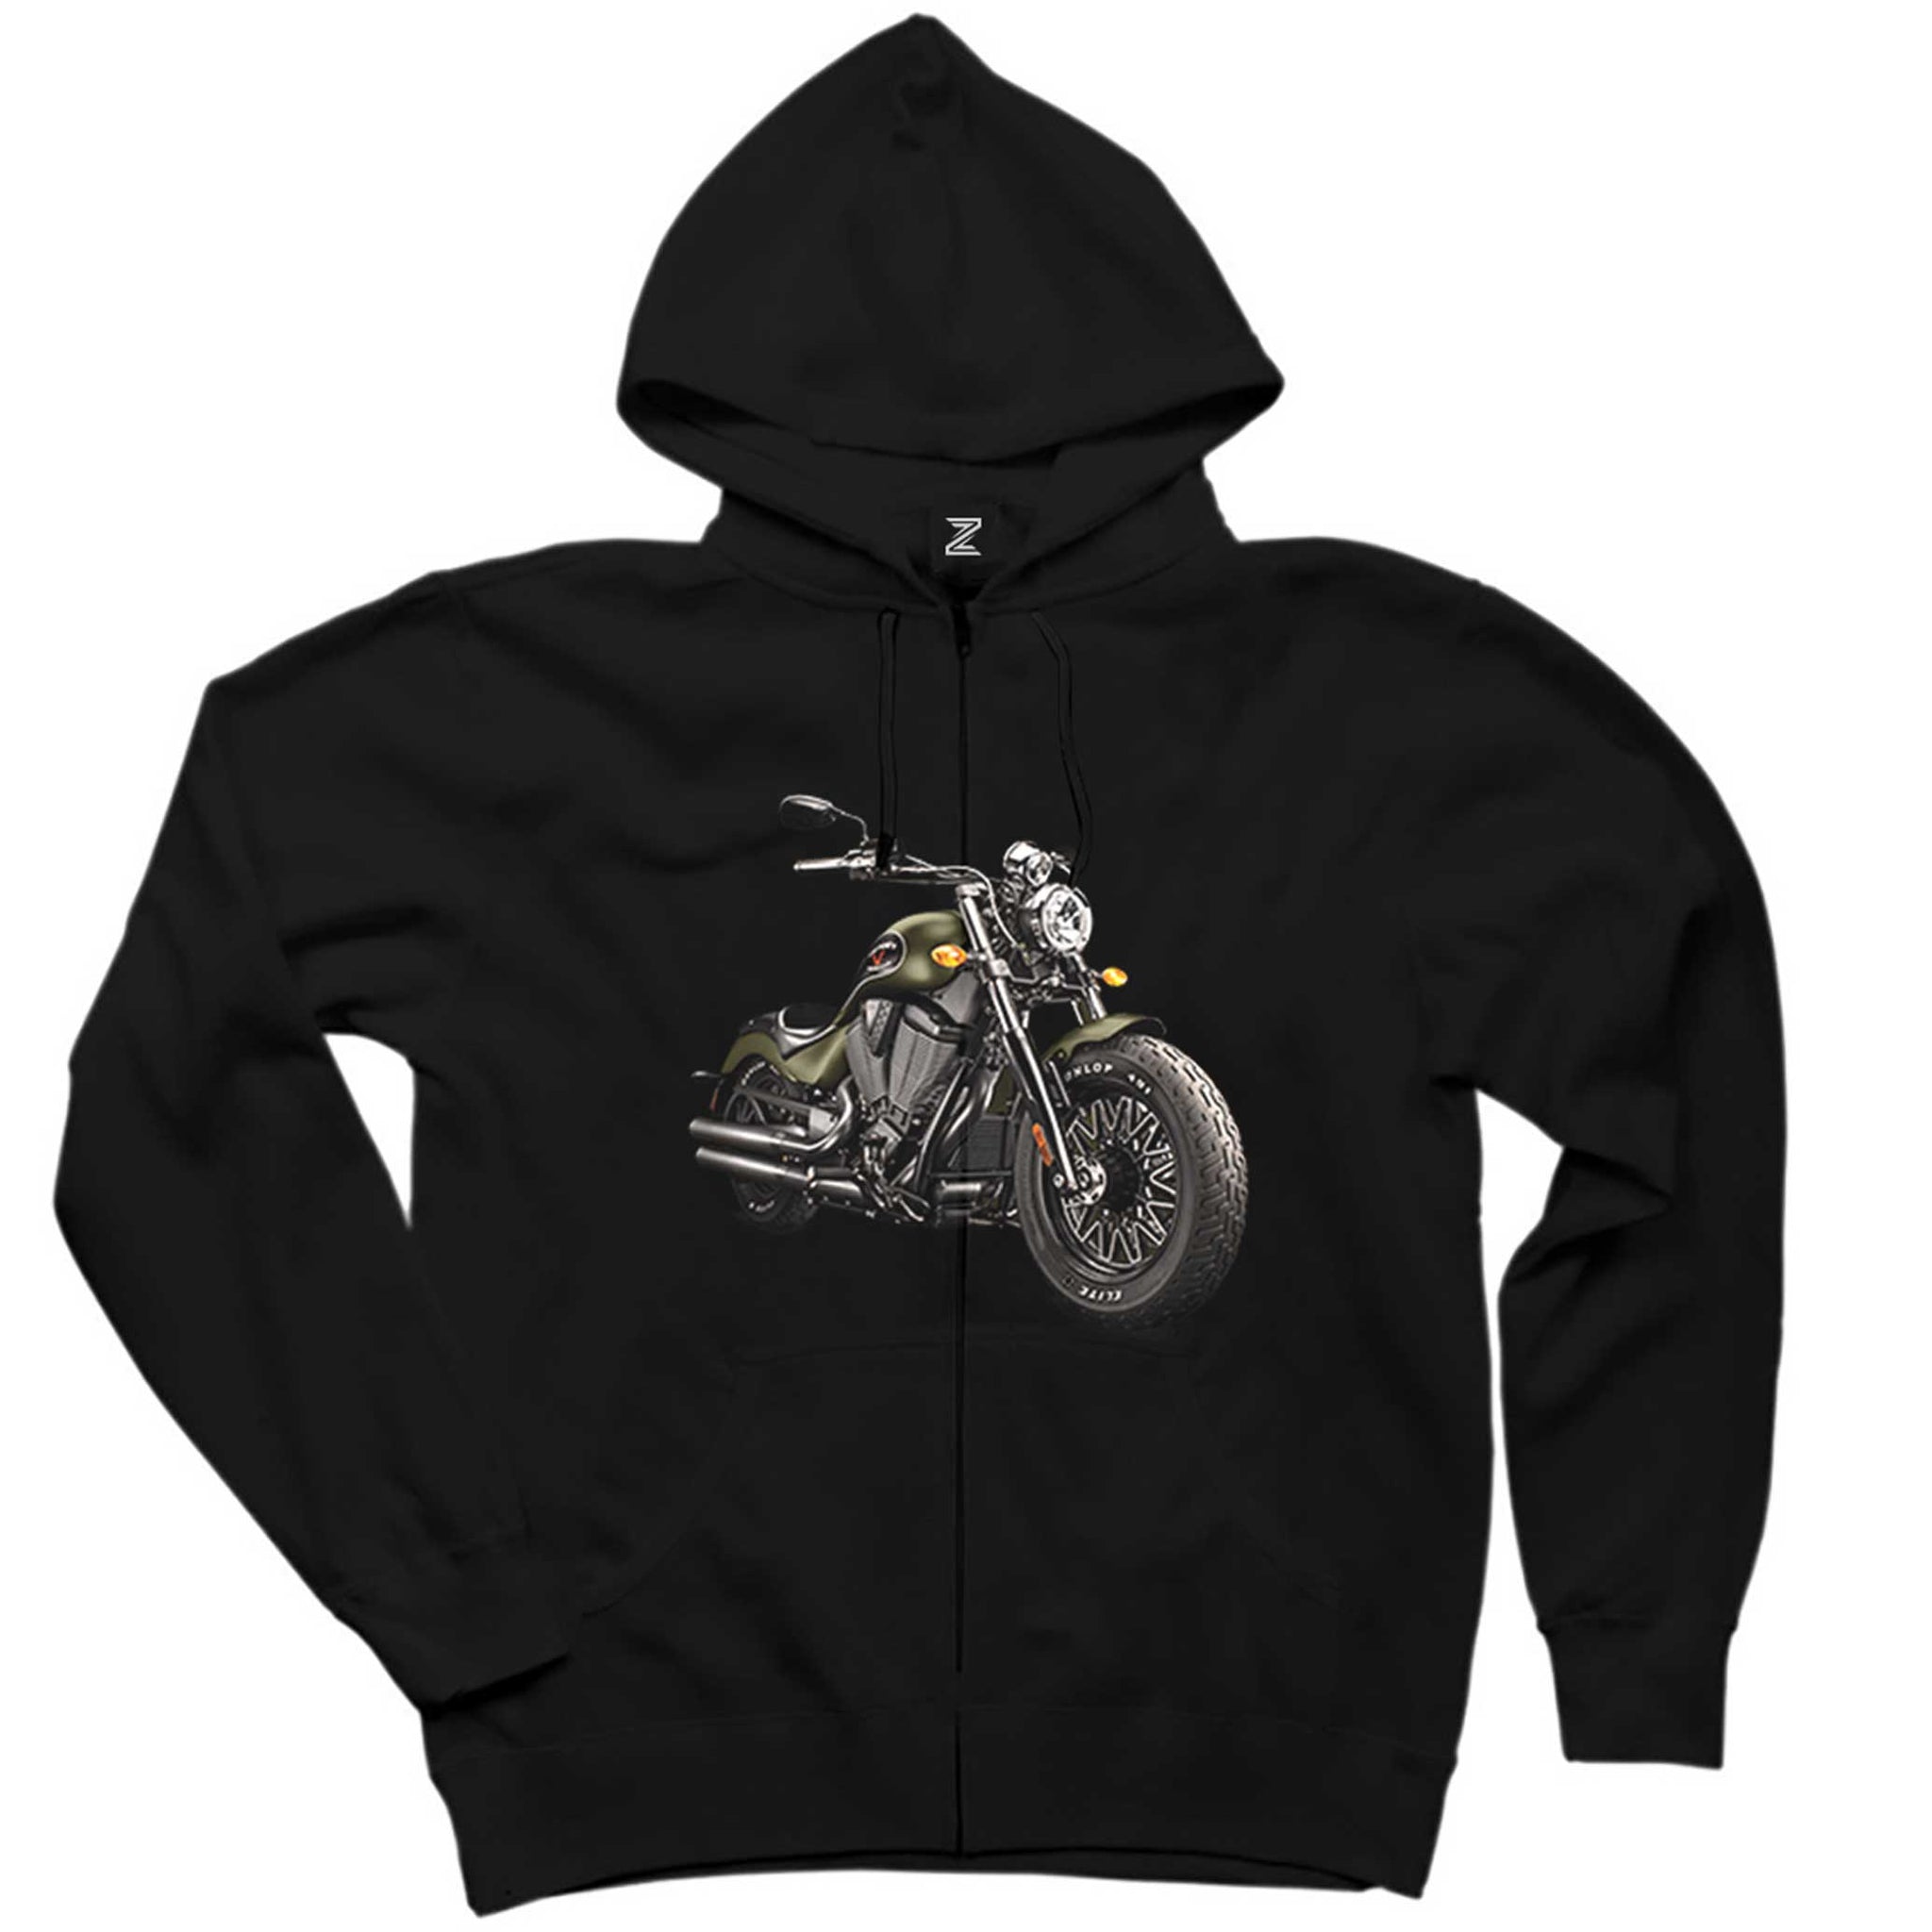 Kruvazör Motosiklet Siyah Fermuarlı Kapşonlu Sweatshirt